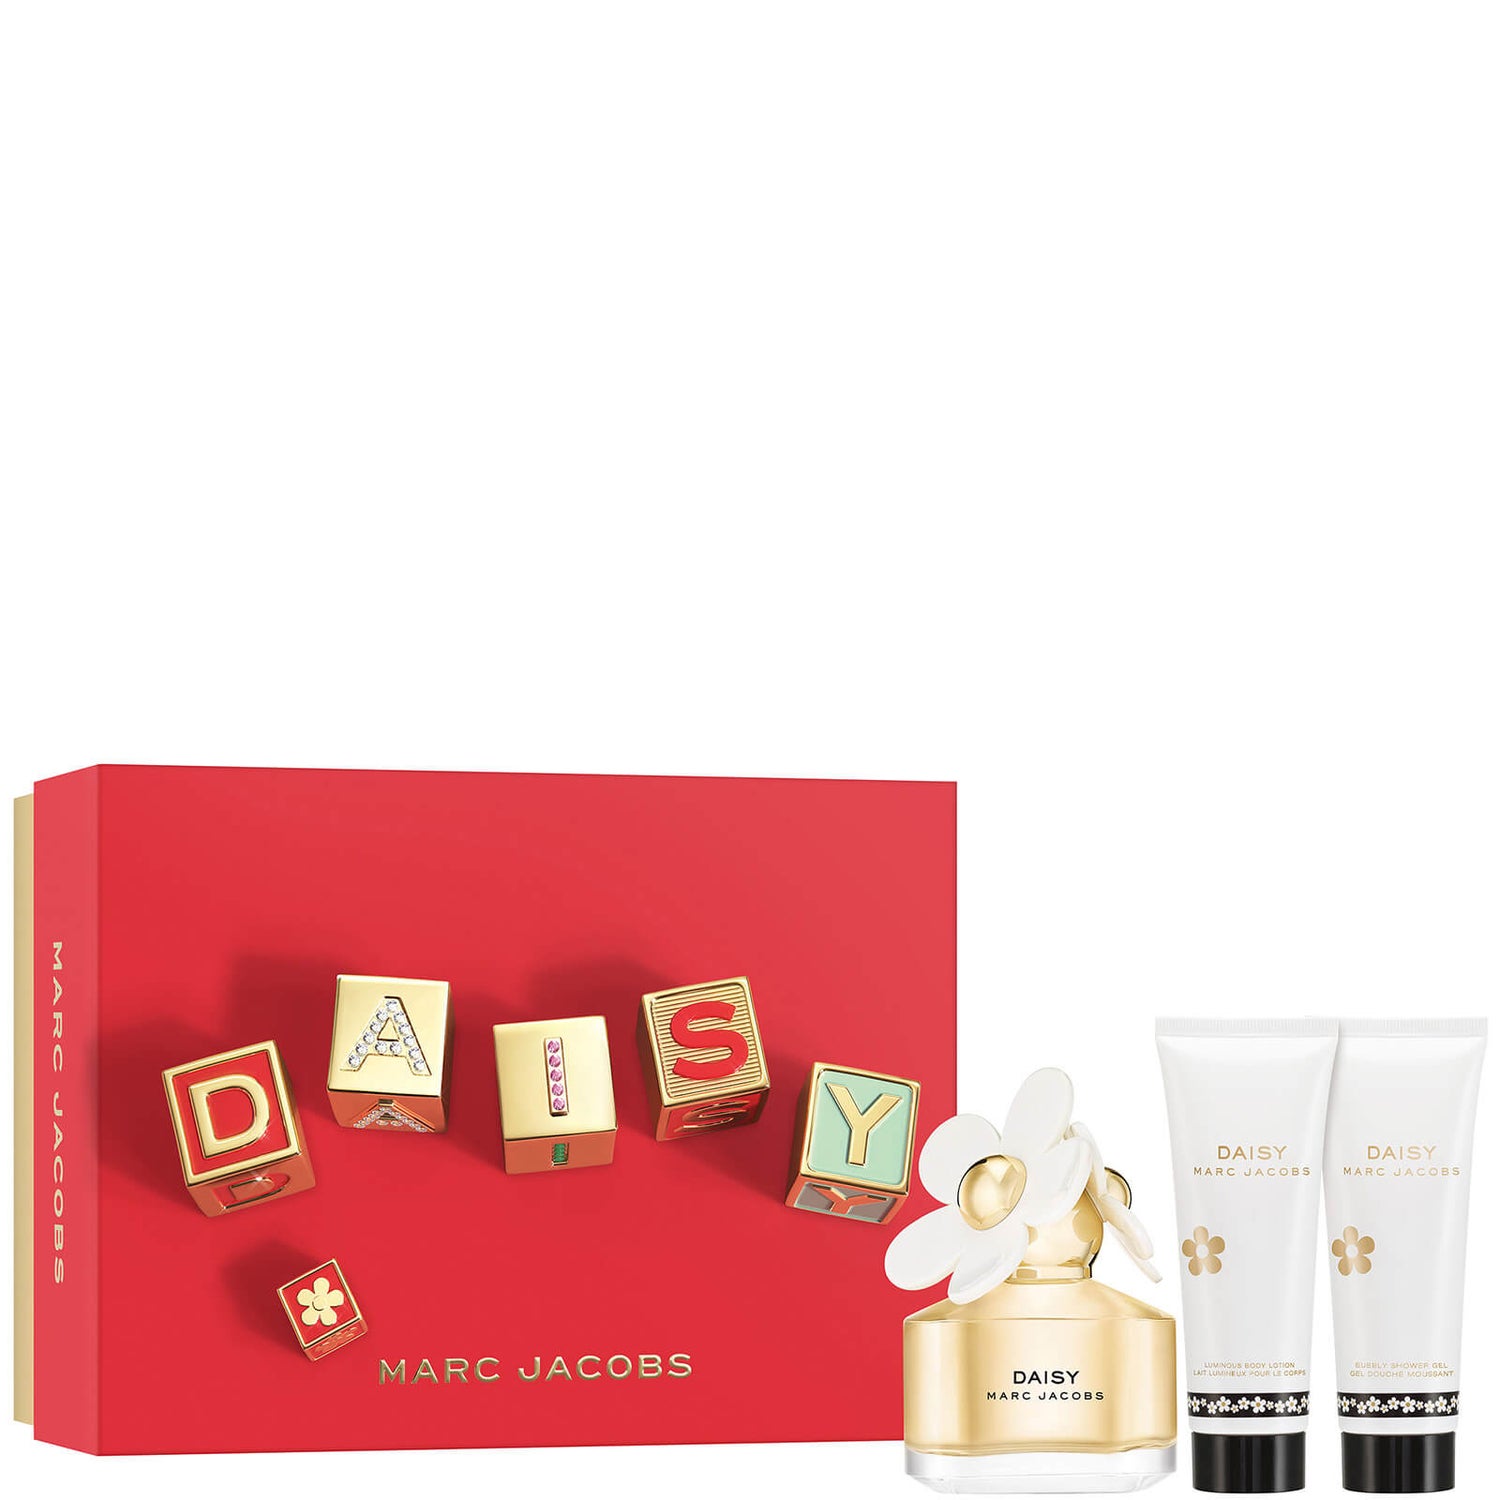 Marc Jacobs Daisy Eau de Toilette 50ml Gift Set zestaw prezentowy z wodą toaletową